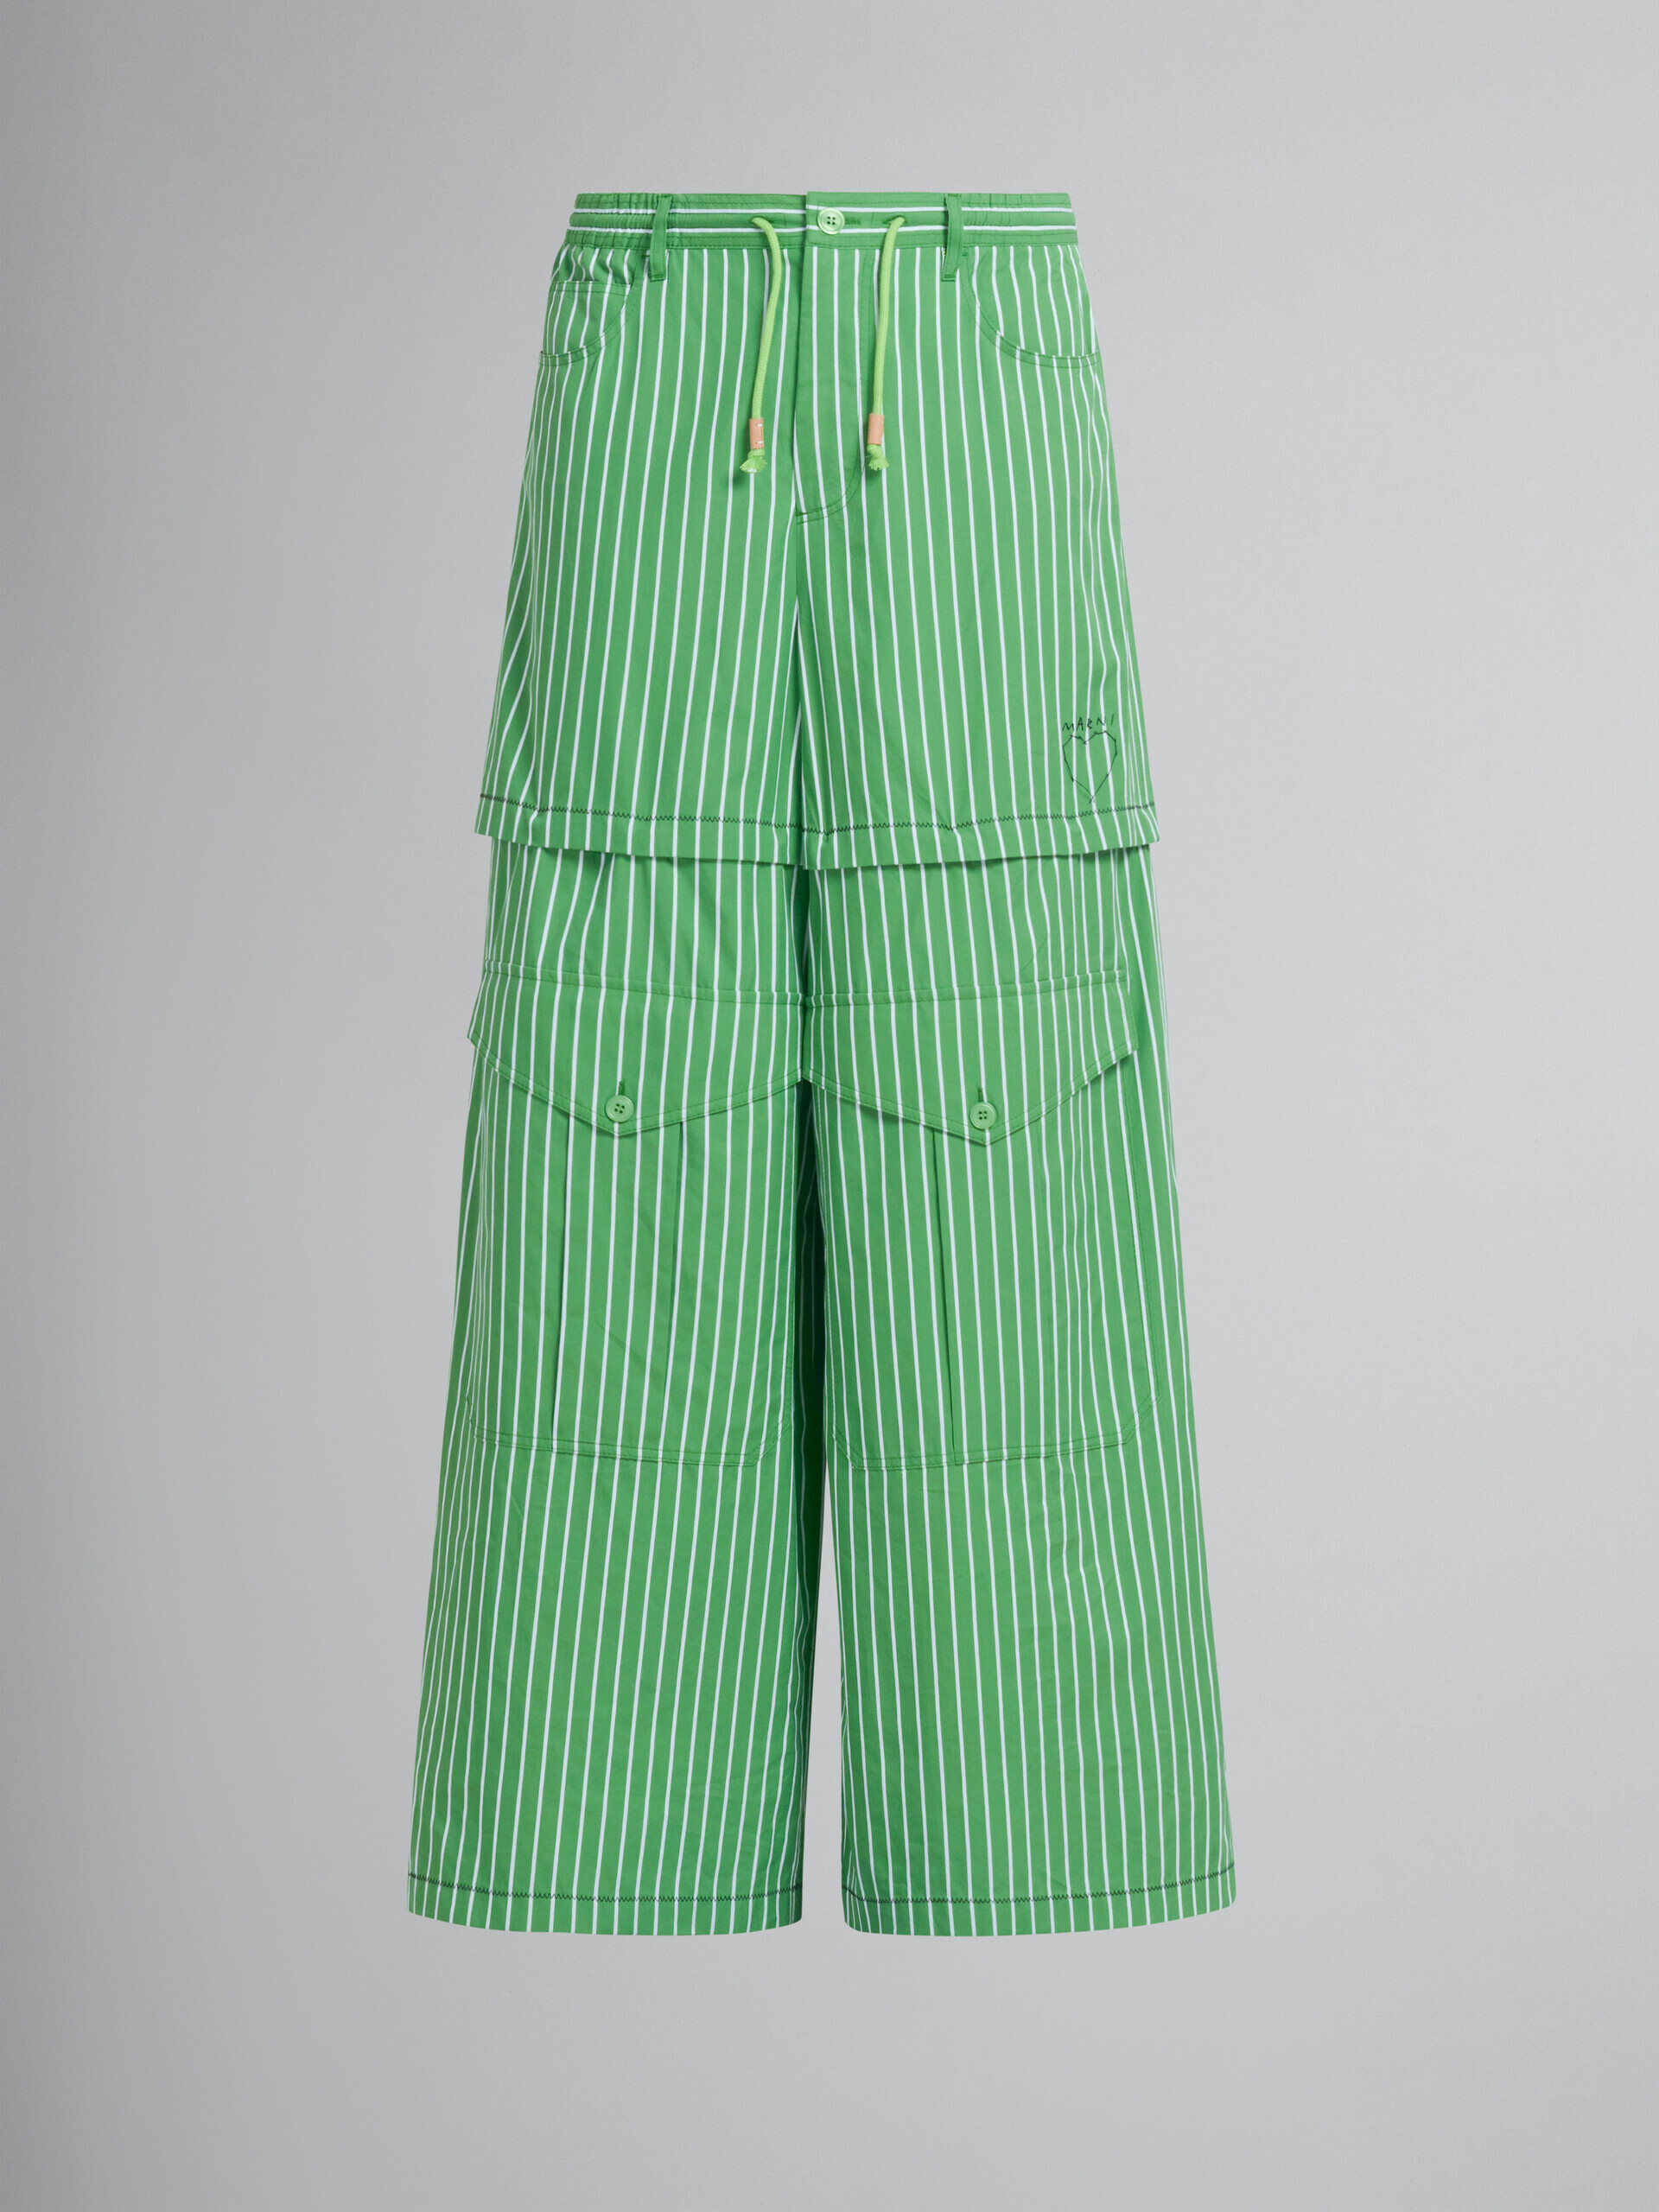 Pantalón cargo a rayas de algodón orgánico verde - Pantalones - Image 2